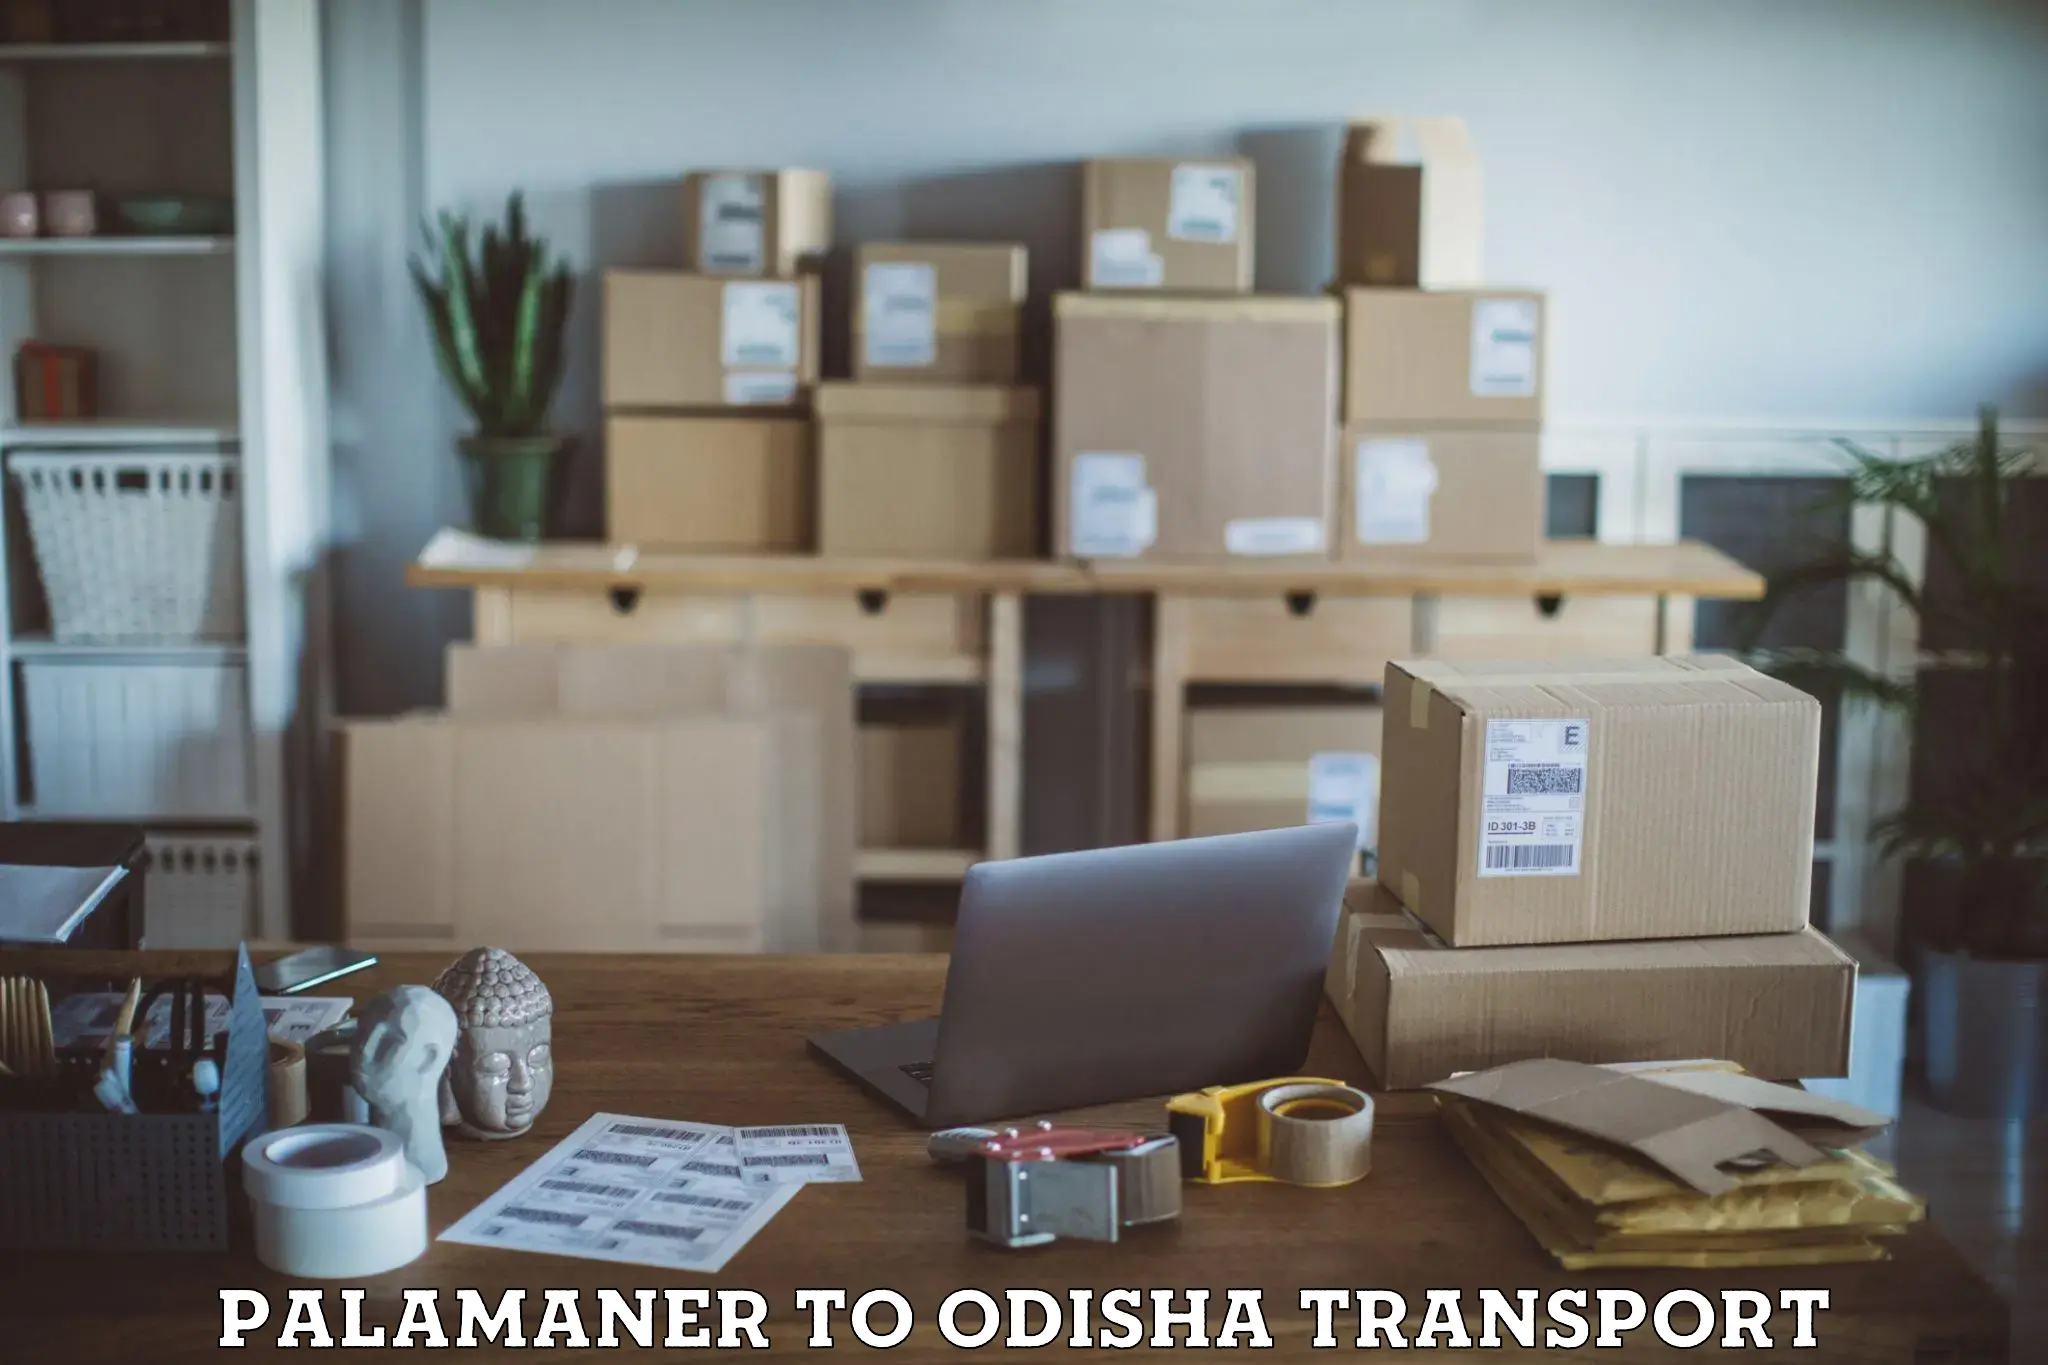 Land transport services Palamaner to Bhubaneswar